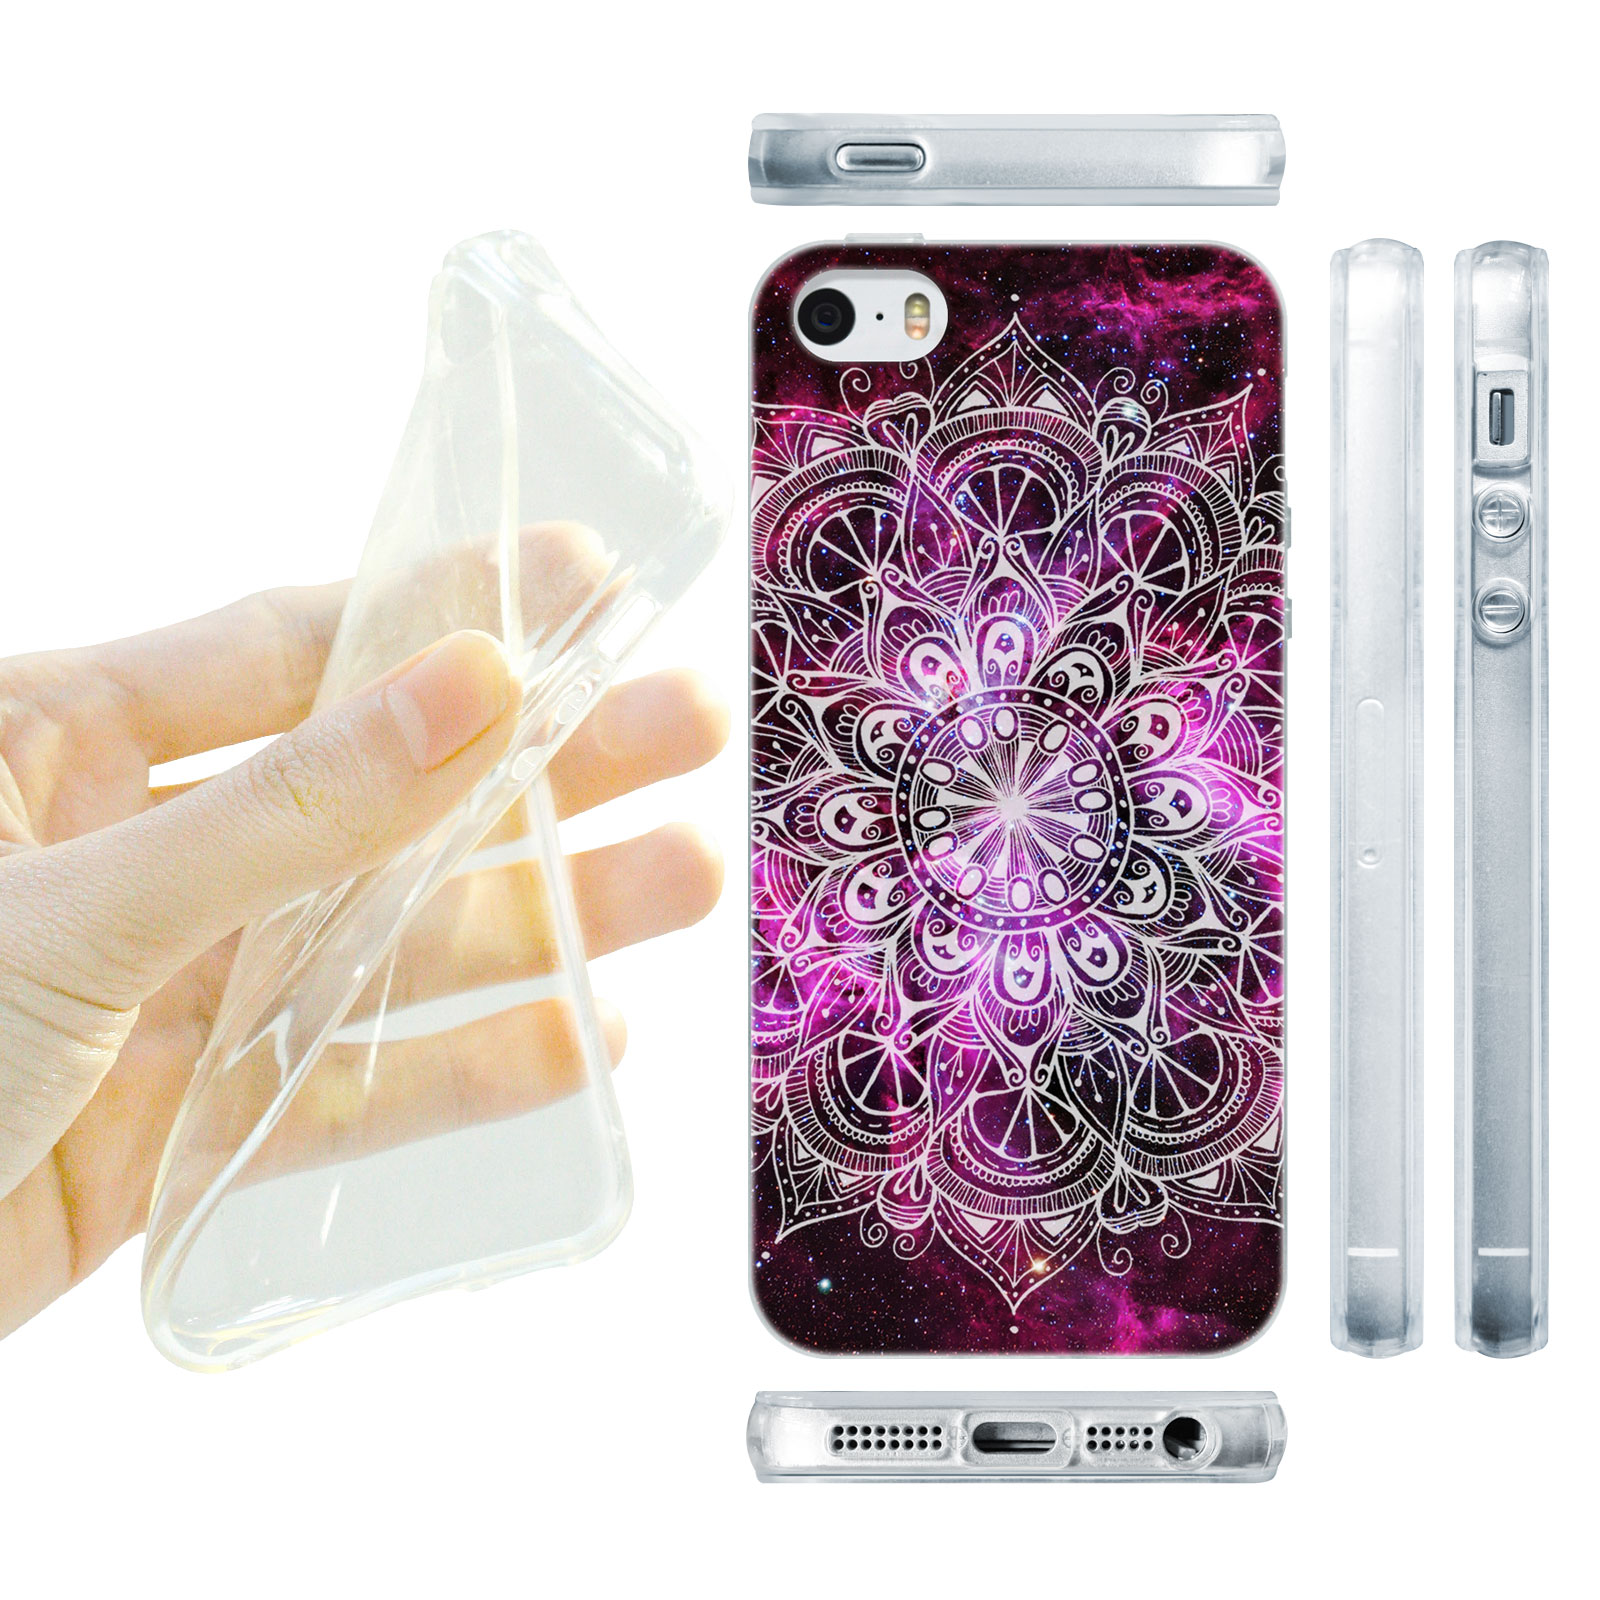 HEAD CASE silikonový obal na mobil Iphone 5/5S  barevná mandala vesmír fialová